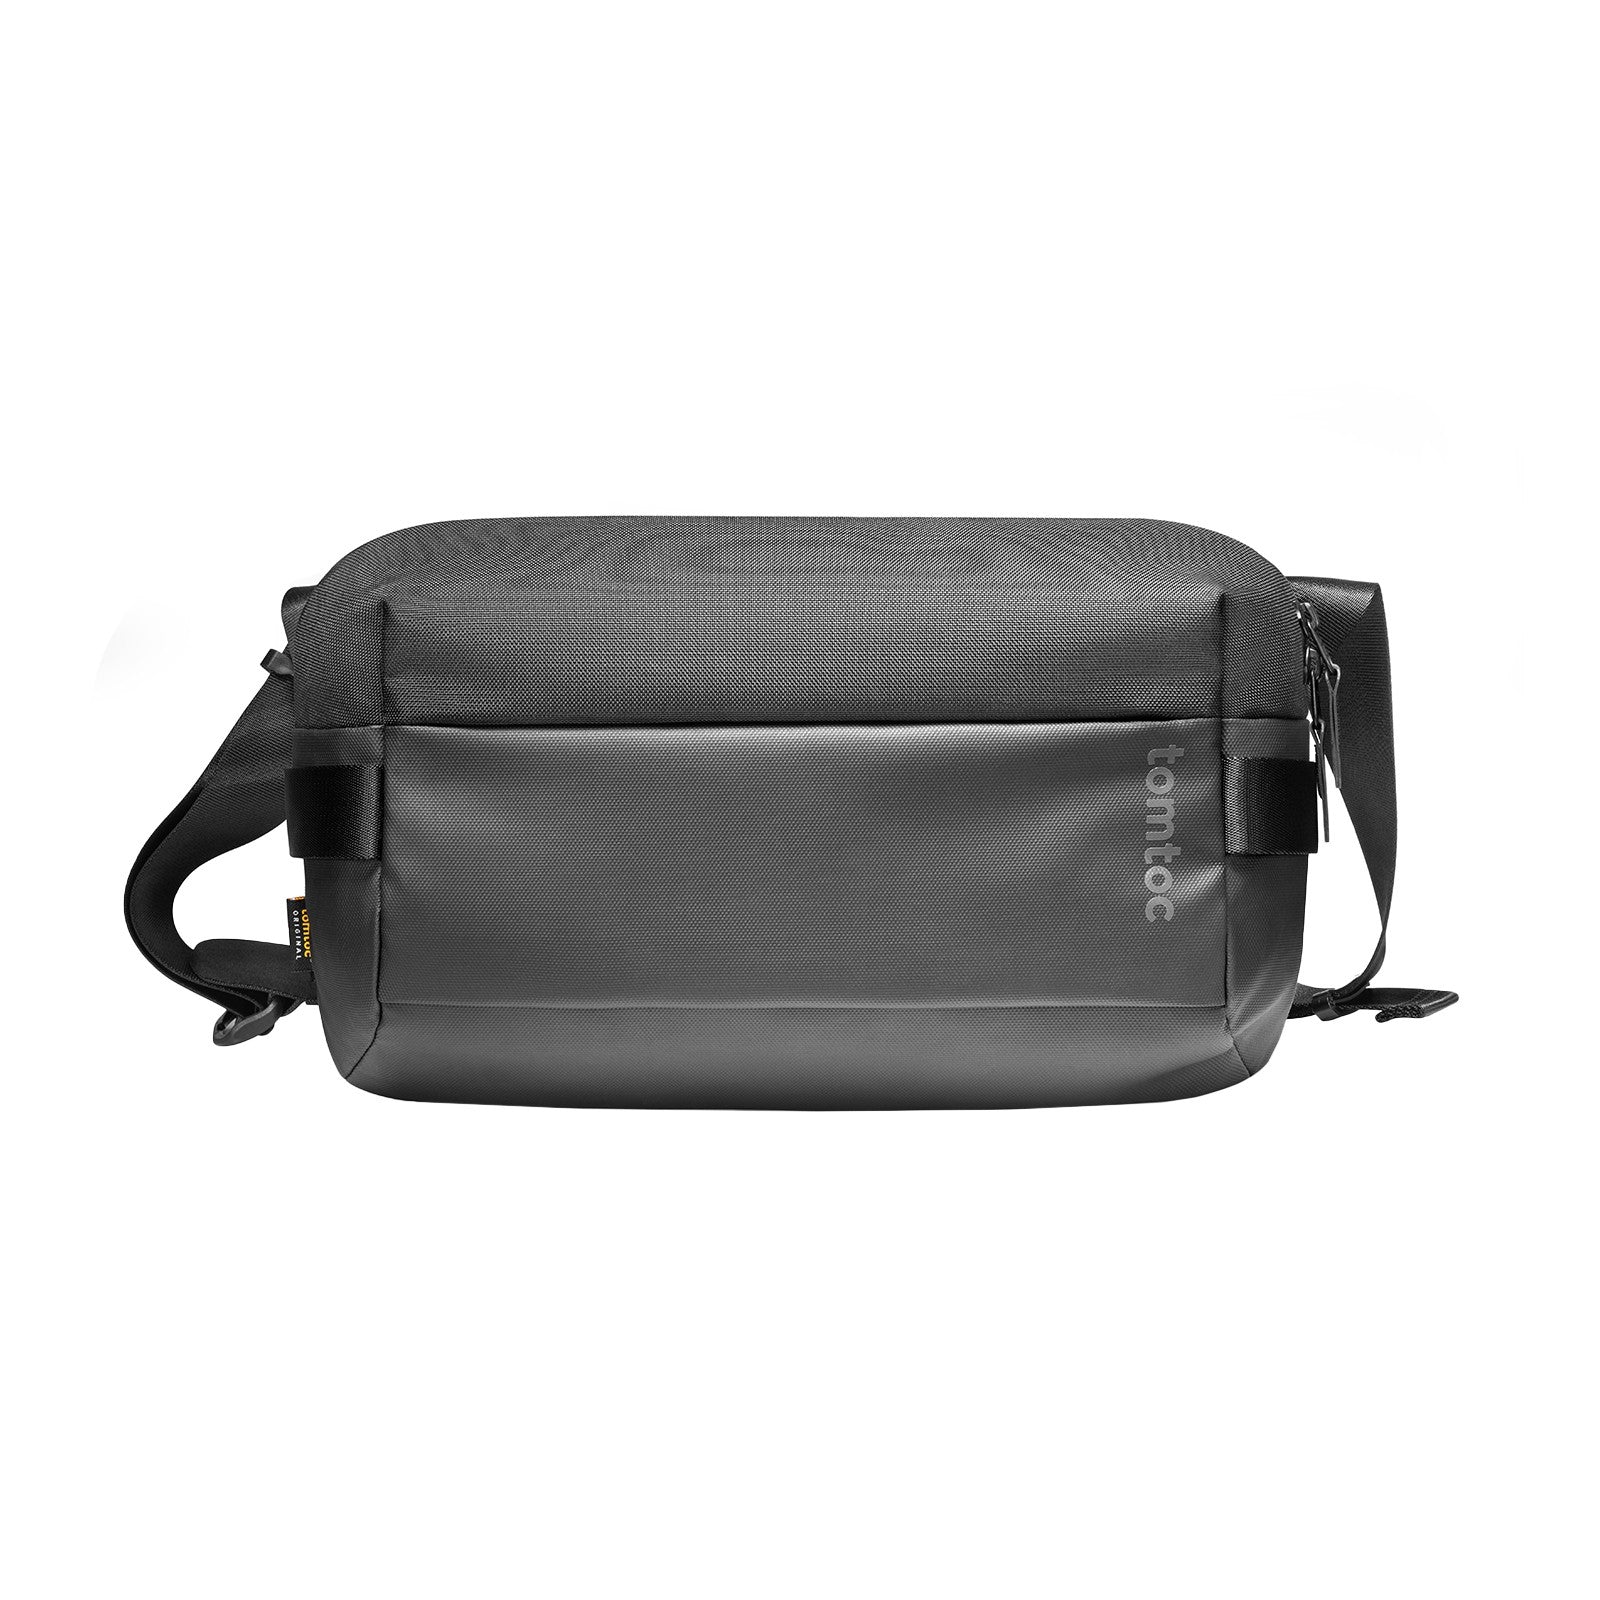 Men's Shoulder Messenger Bag Fashion Square Bag For Daily Commute